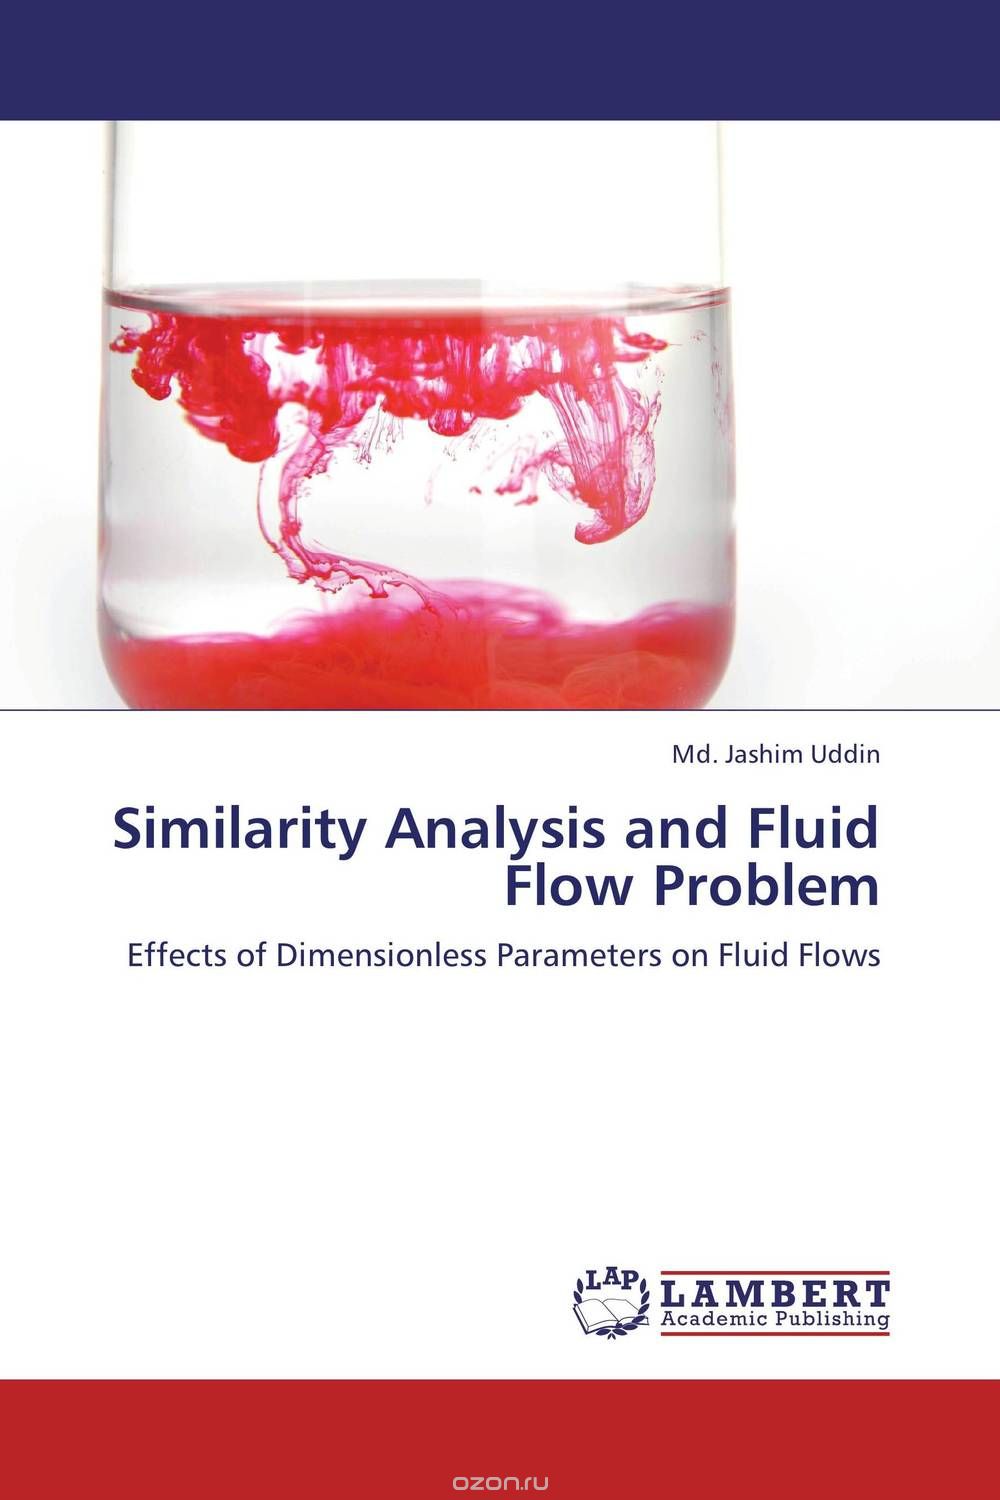 Скачать книгу "Similarity Analysis and Fluid Flow Problem"